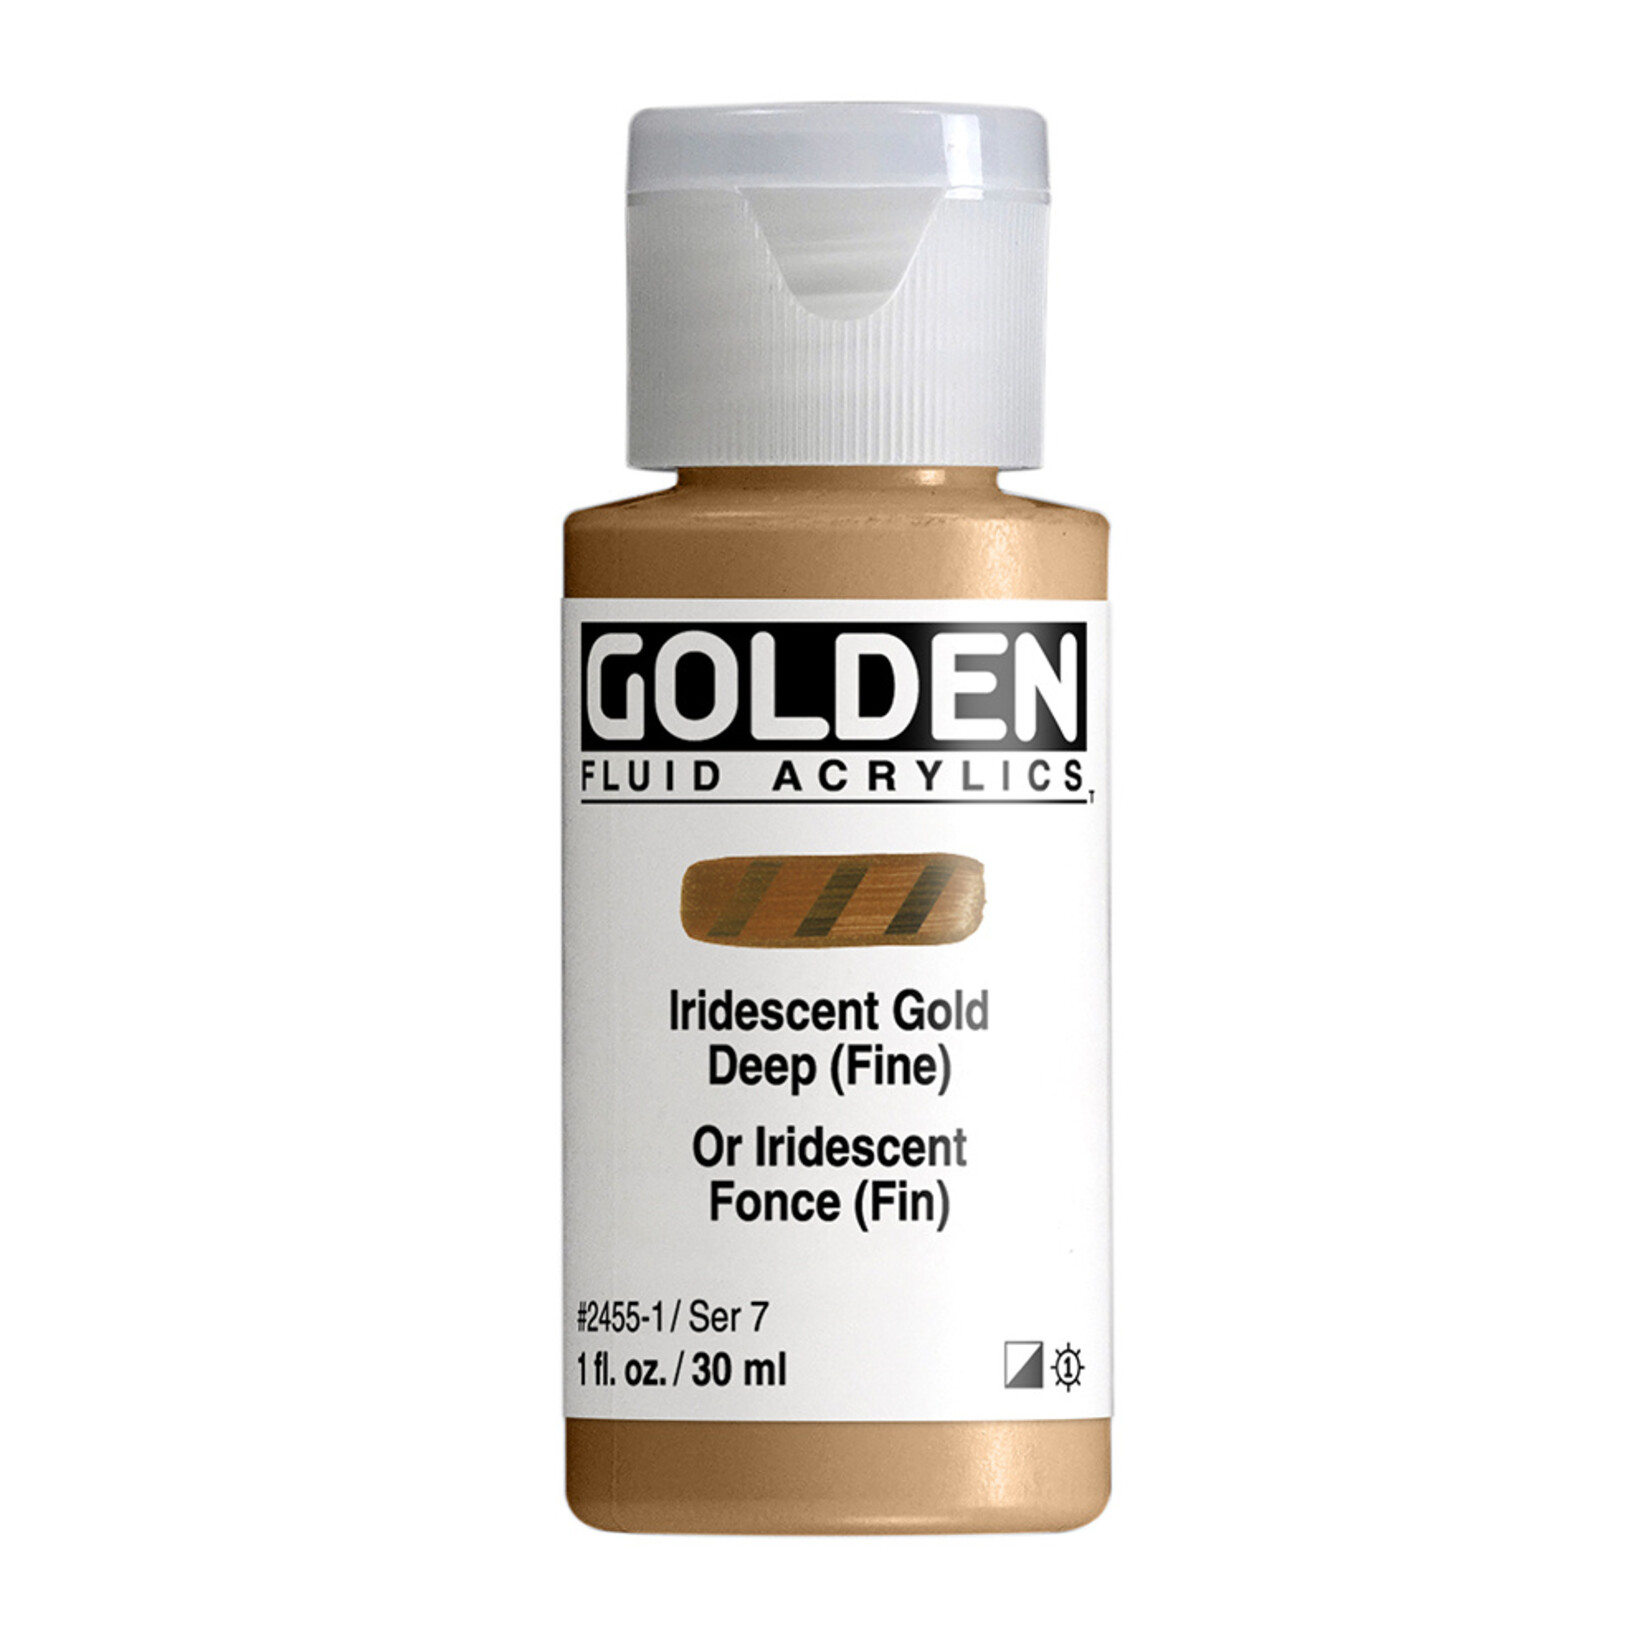 GOLDEN GOLDEN FLUID ACRYLIC 1OZ IRIDESCENT GOLD DEEP (FINE)